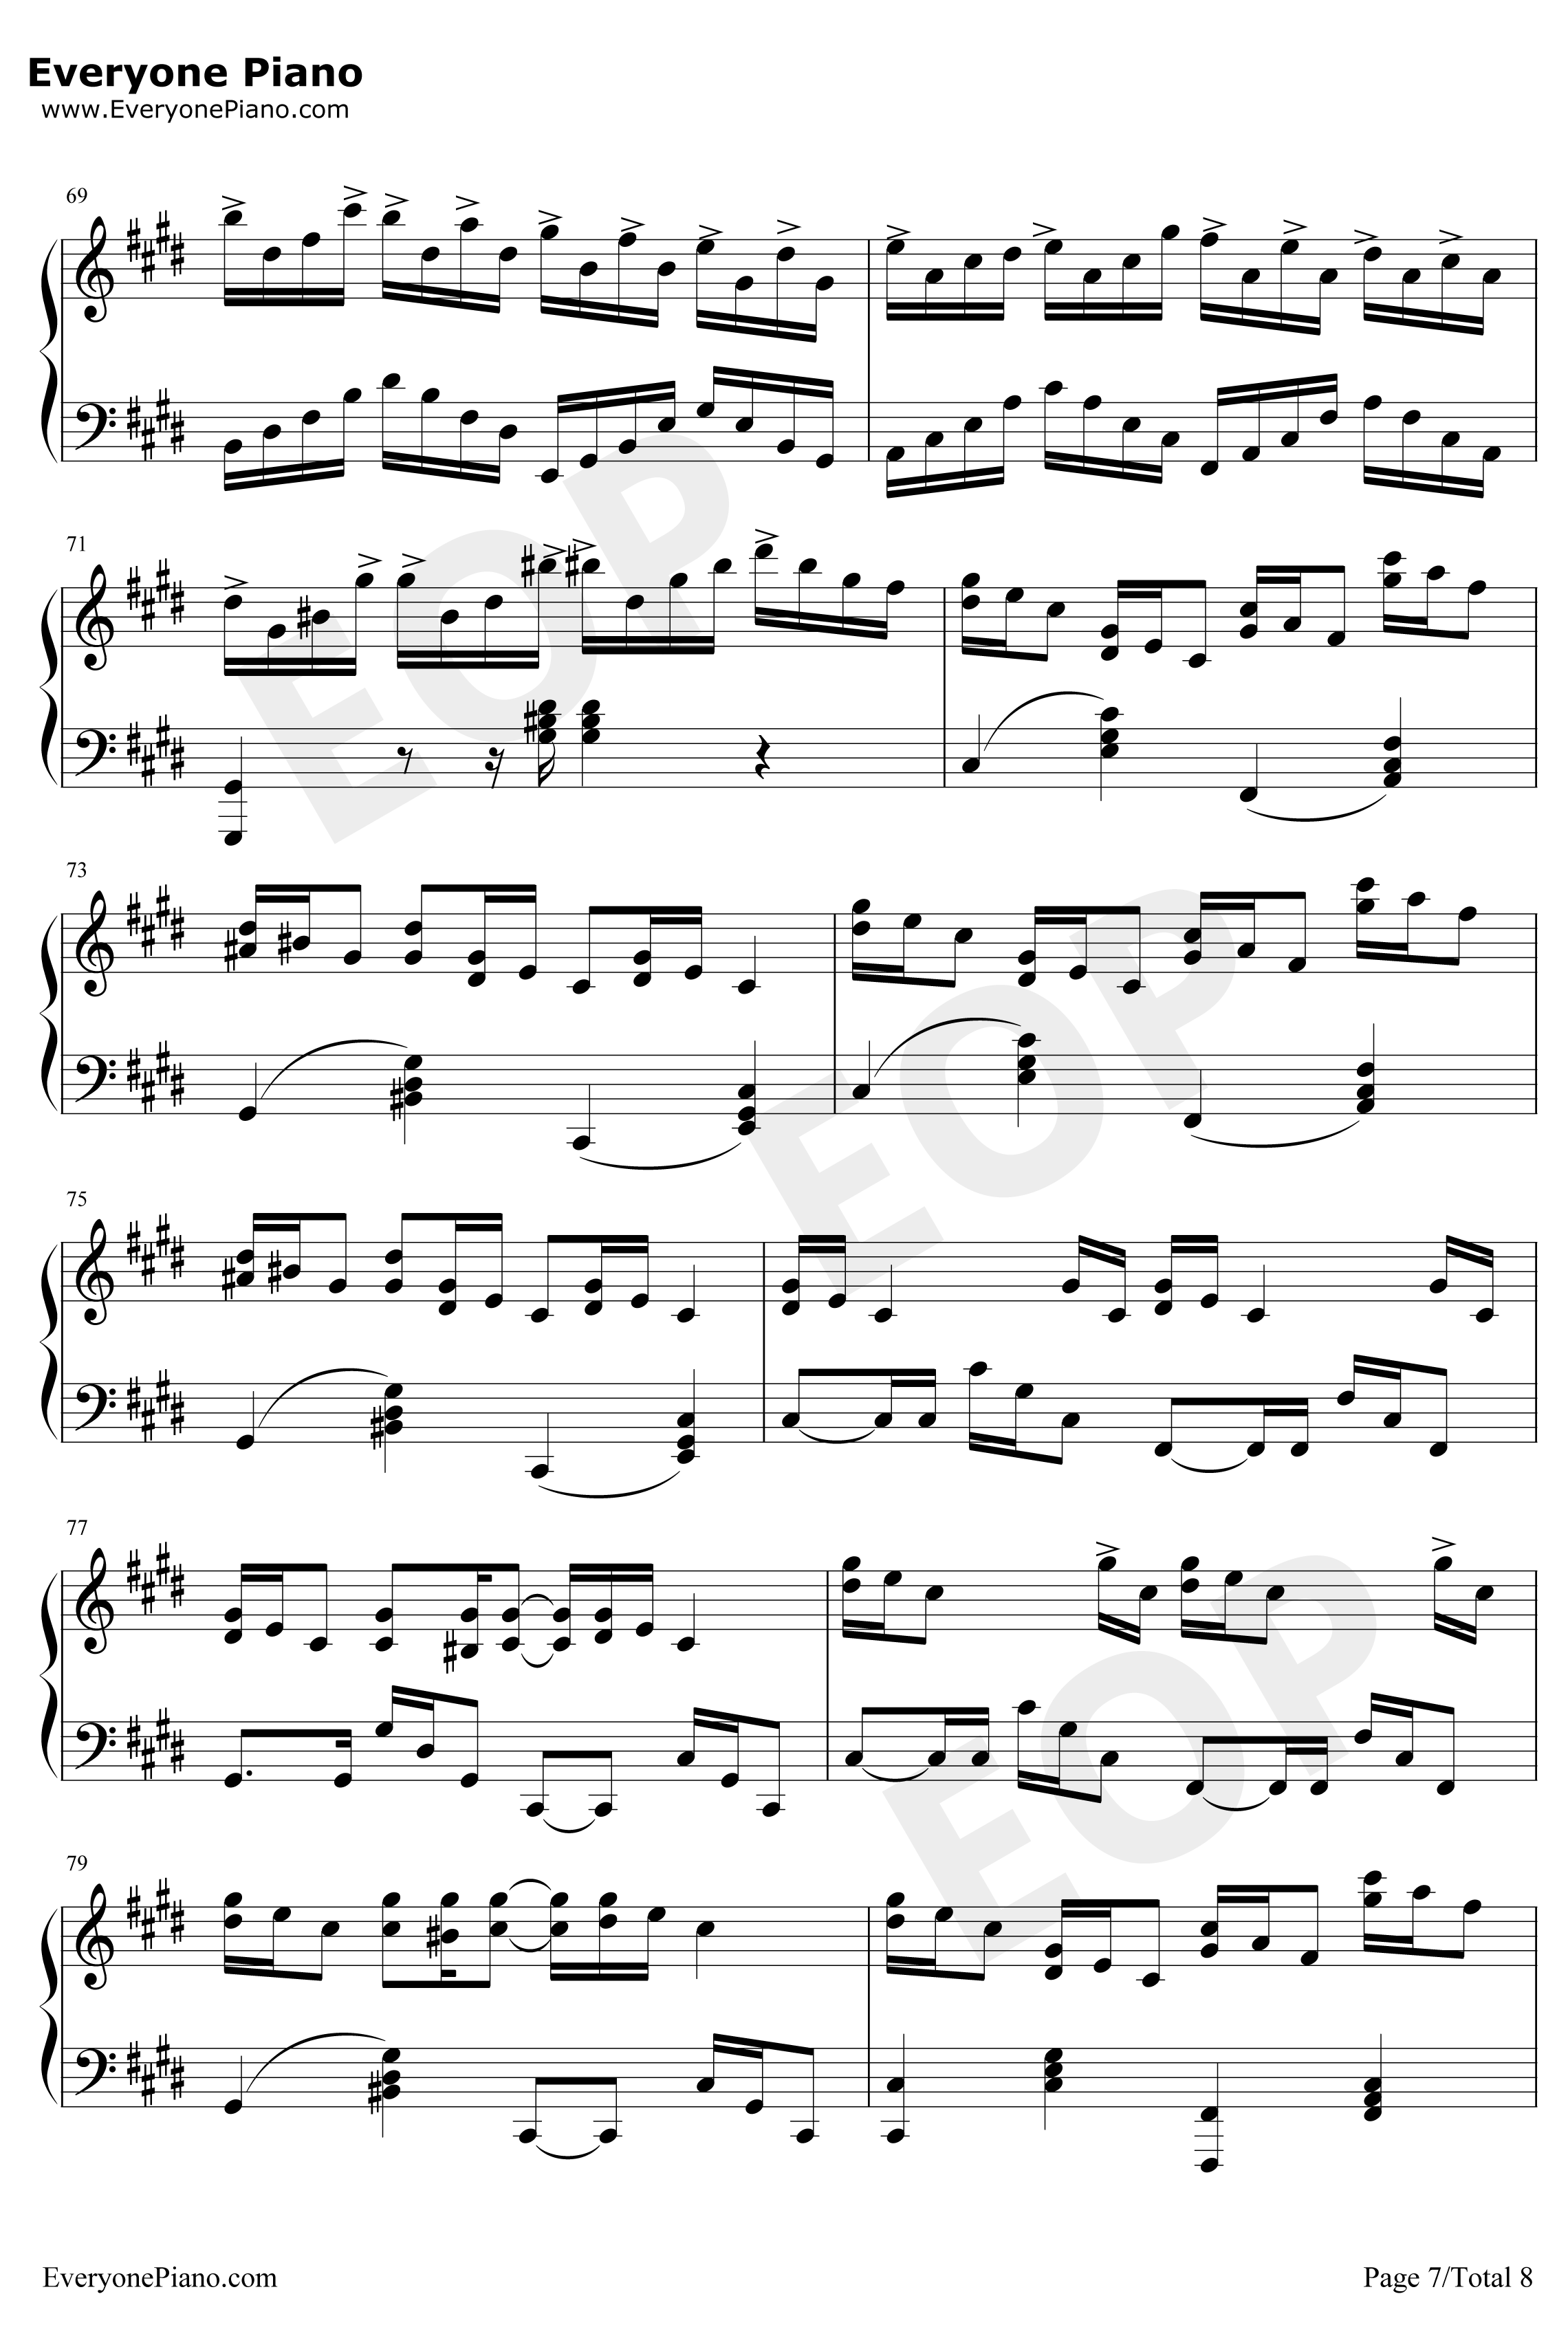 克罗地亚狂想曲钢琴谱-完美版-马克西姆7